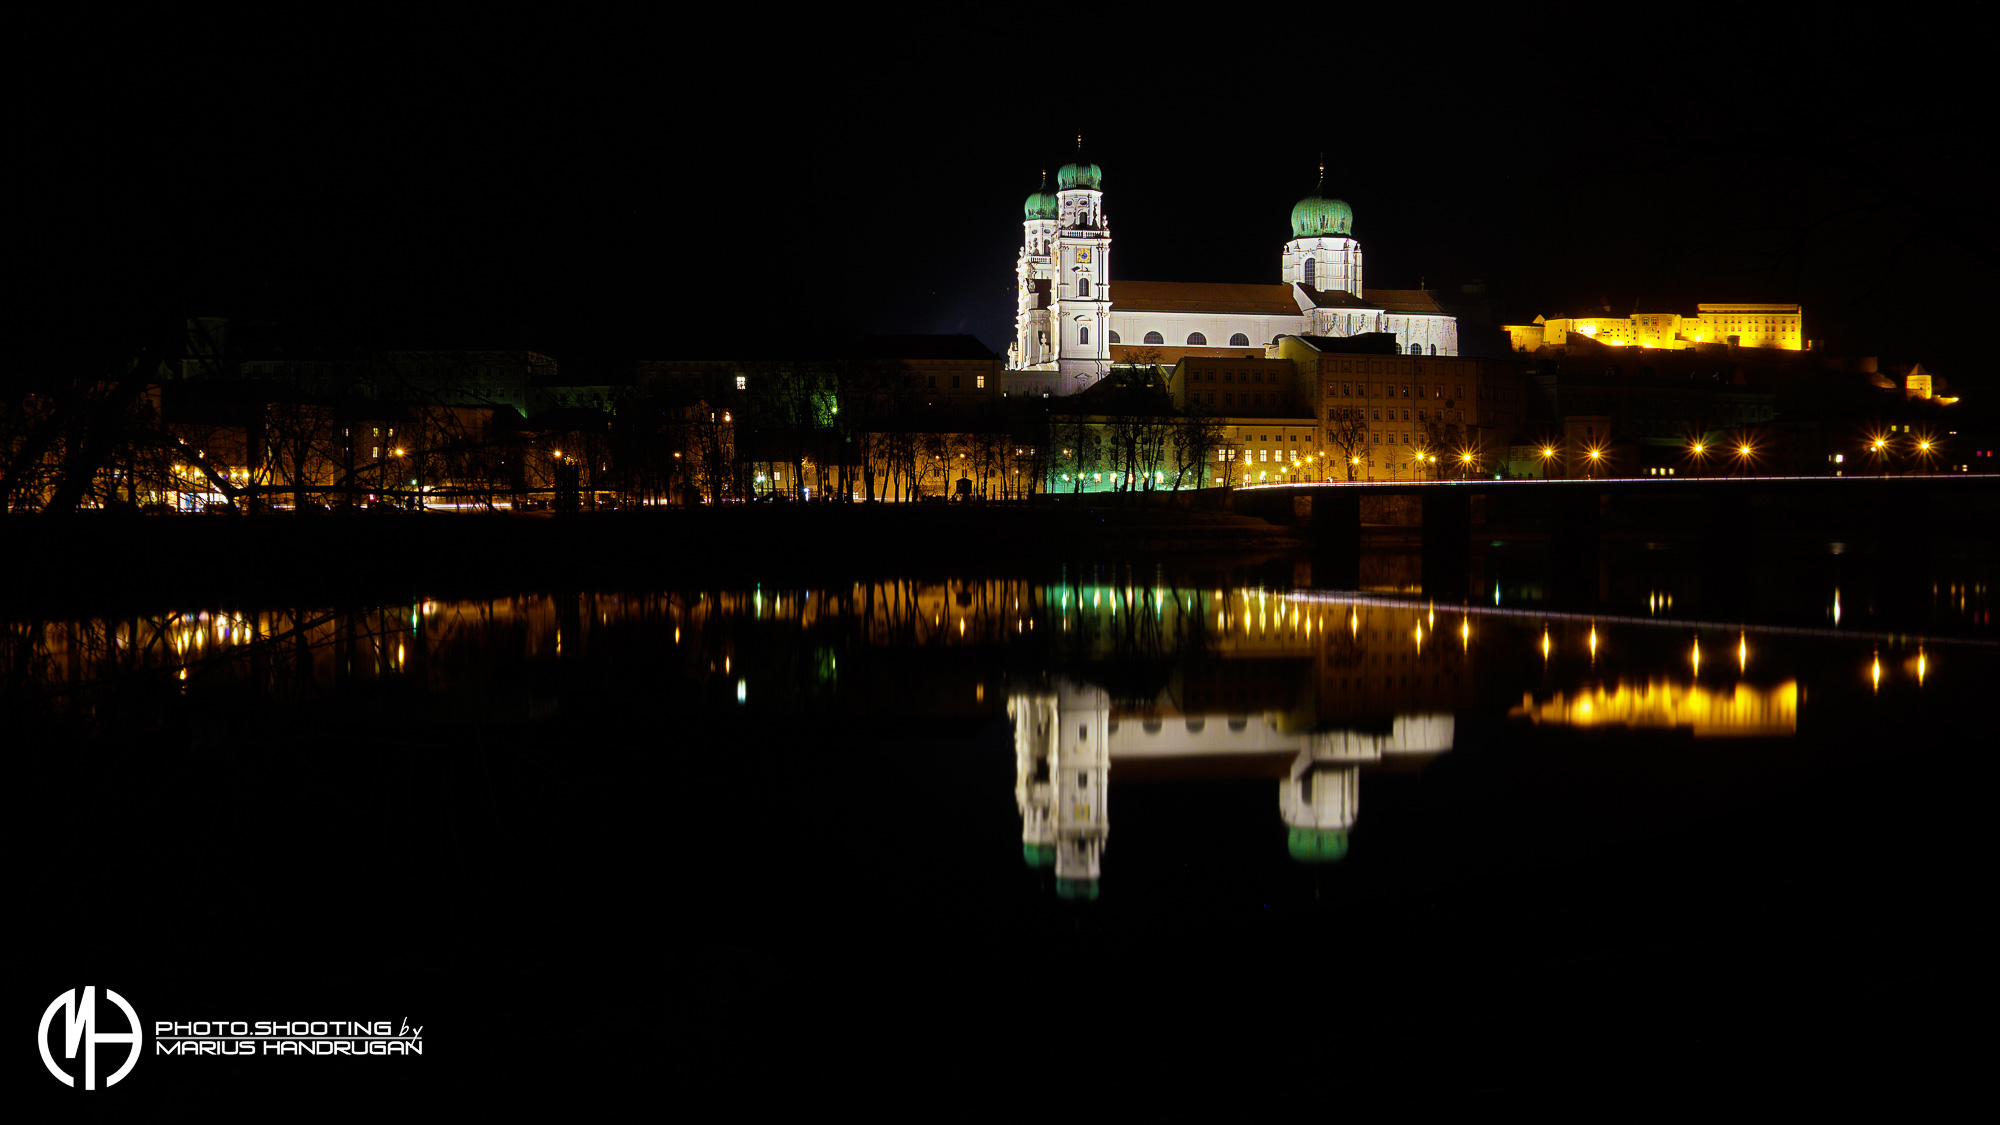 Dom und Oberhaus in Passau bei Nacht